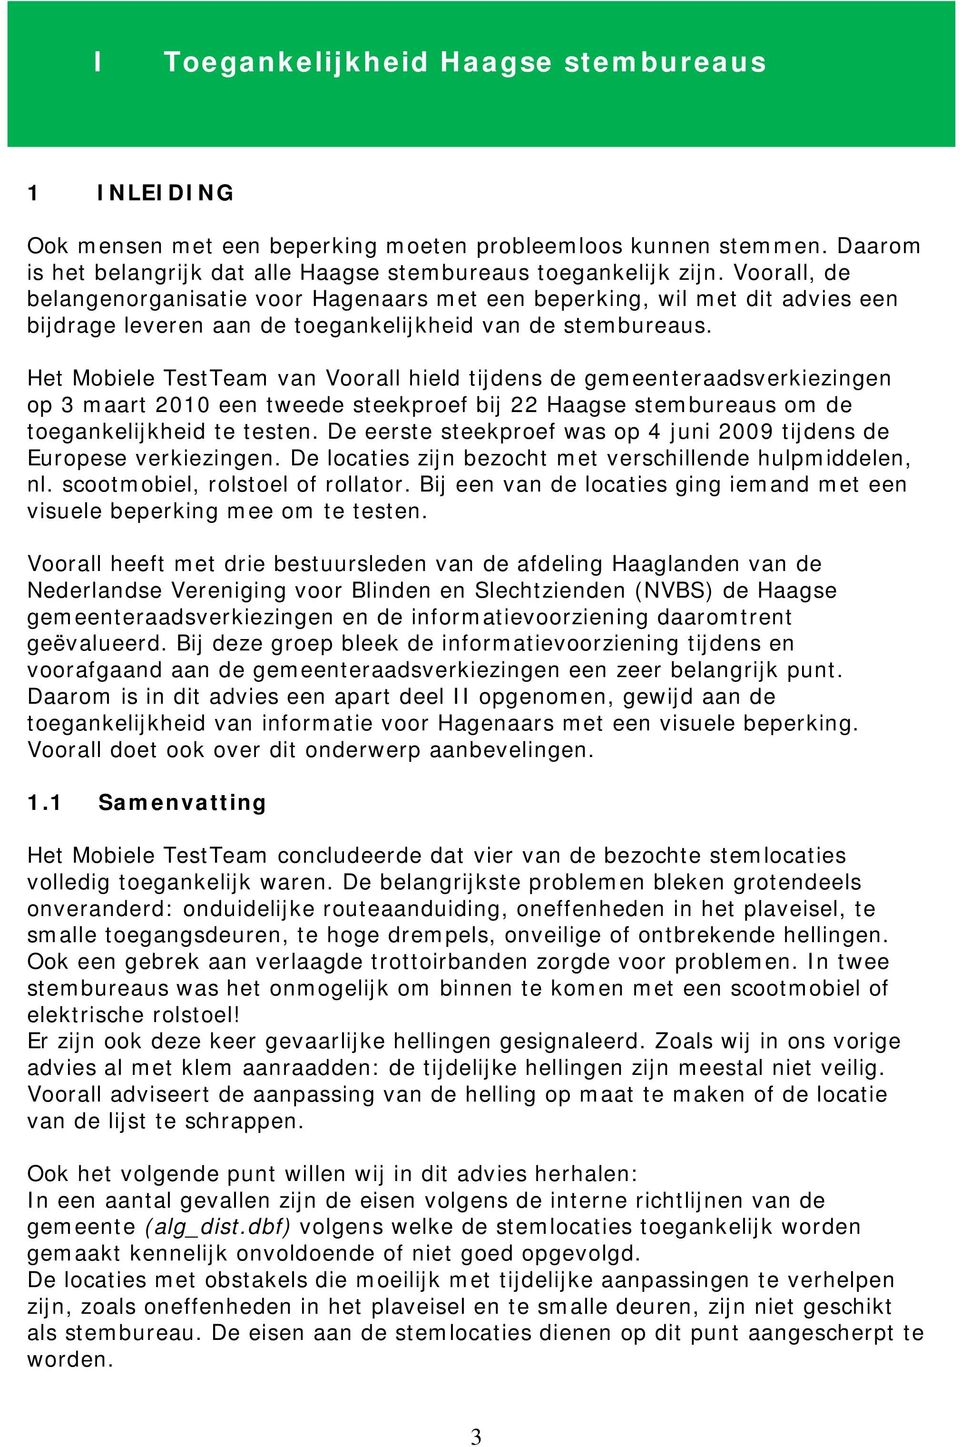 Het Mobiele TestTeam van Voorall hield tijdens de gemeenteraadsverkiezingen op 3 maart 2010 een tweede steekproef bij 22 Haagse stembureaus om de toegankelijkheid te testen.